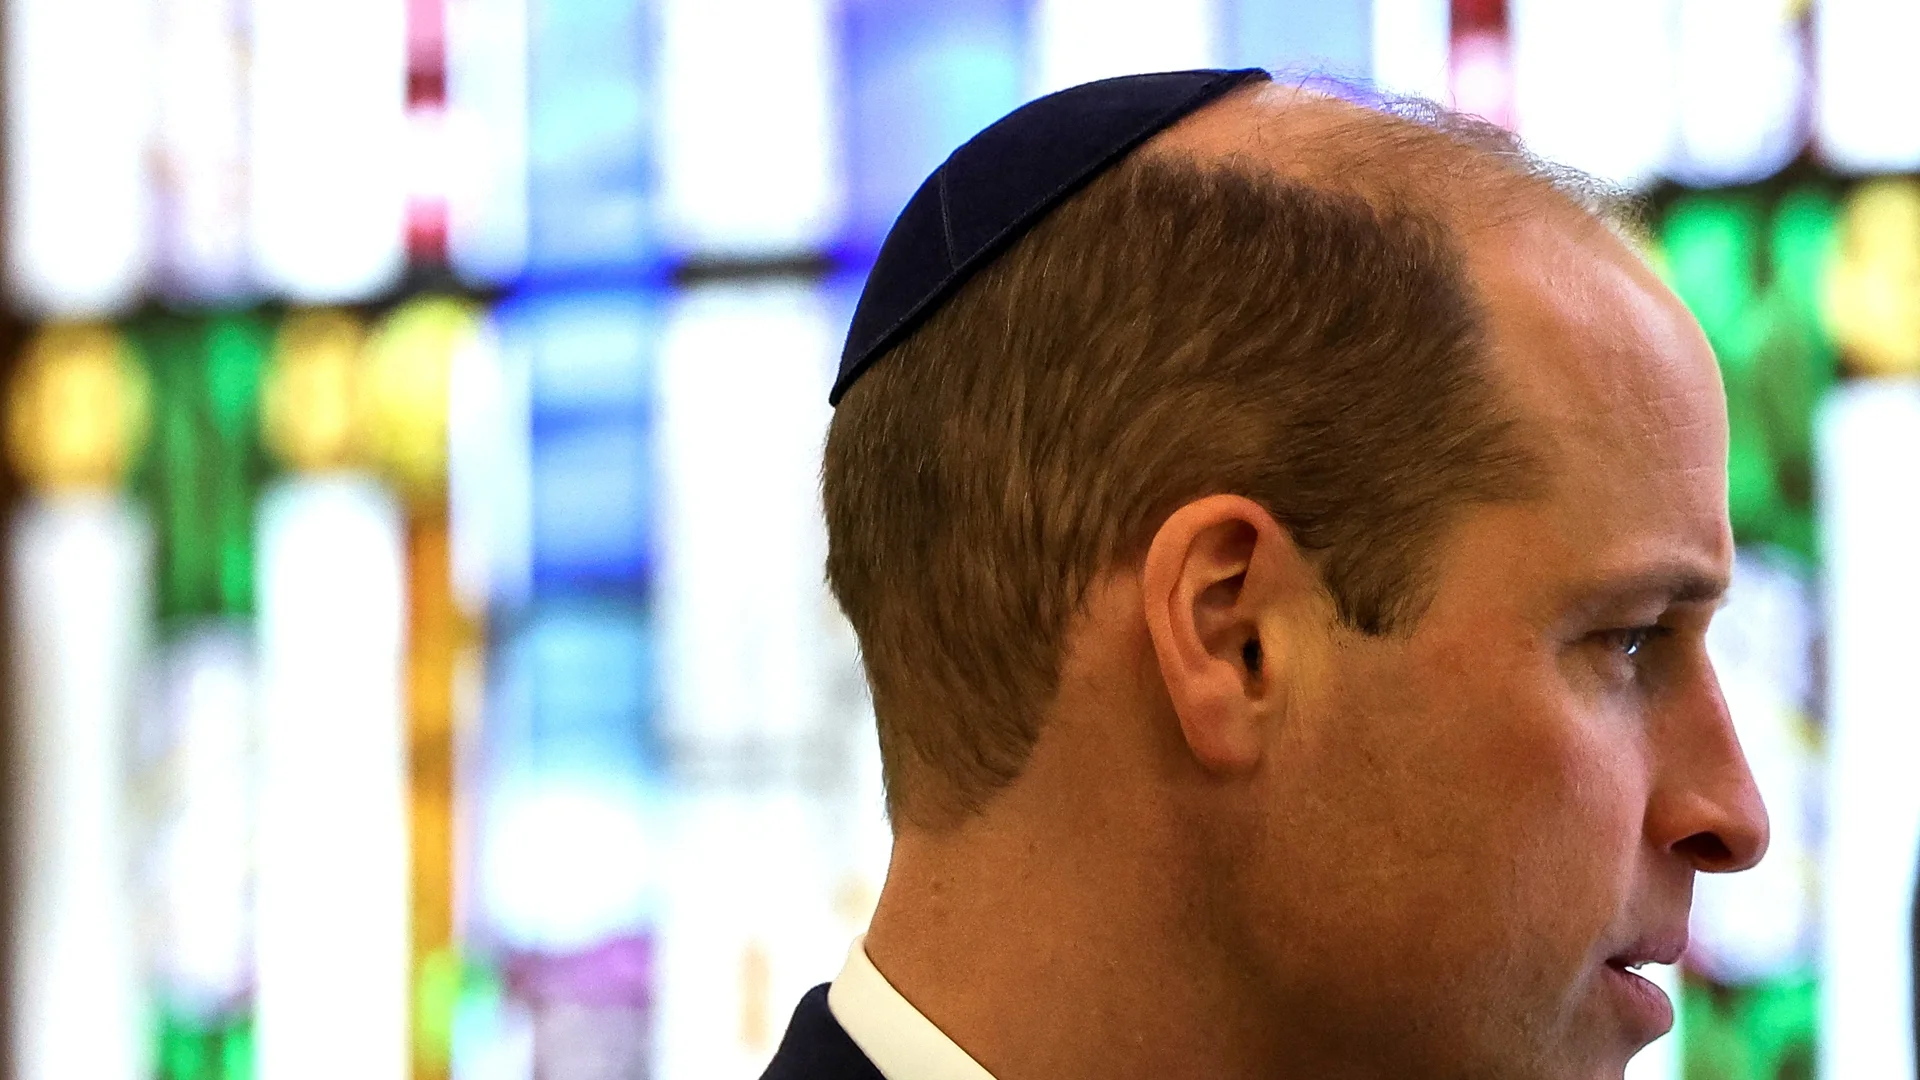 След скандалните думи за войната в Израел: Принц Уилям с коментар за антисемитизма